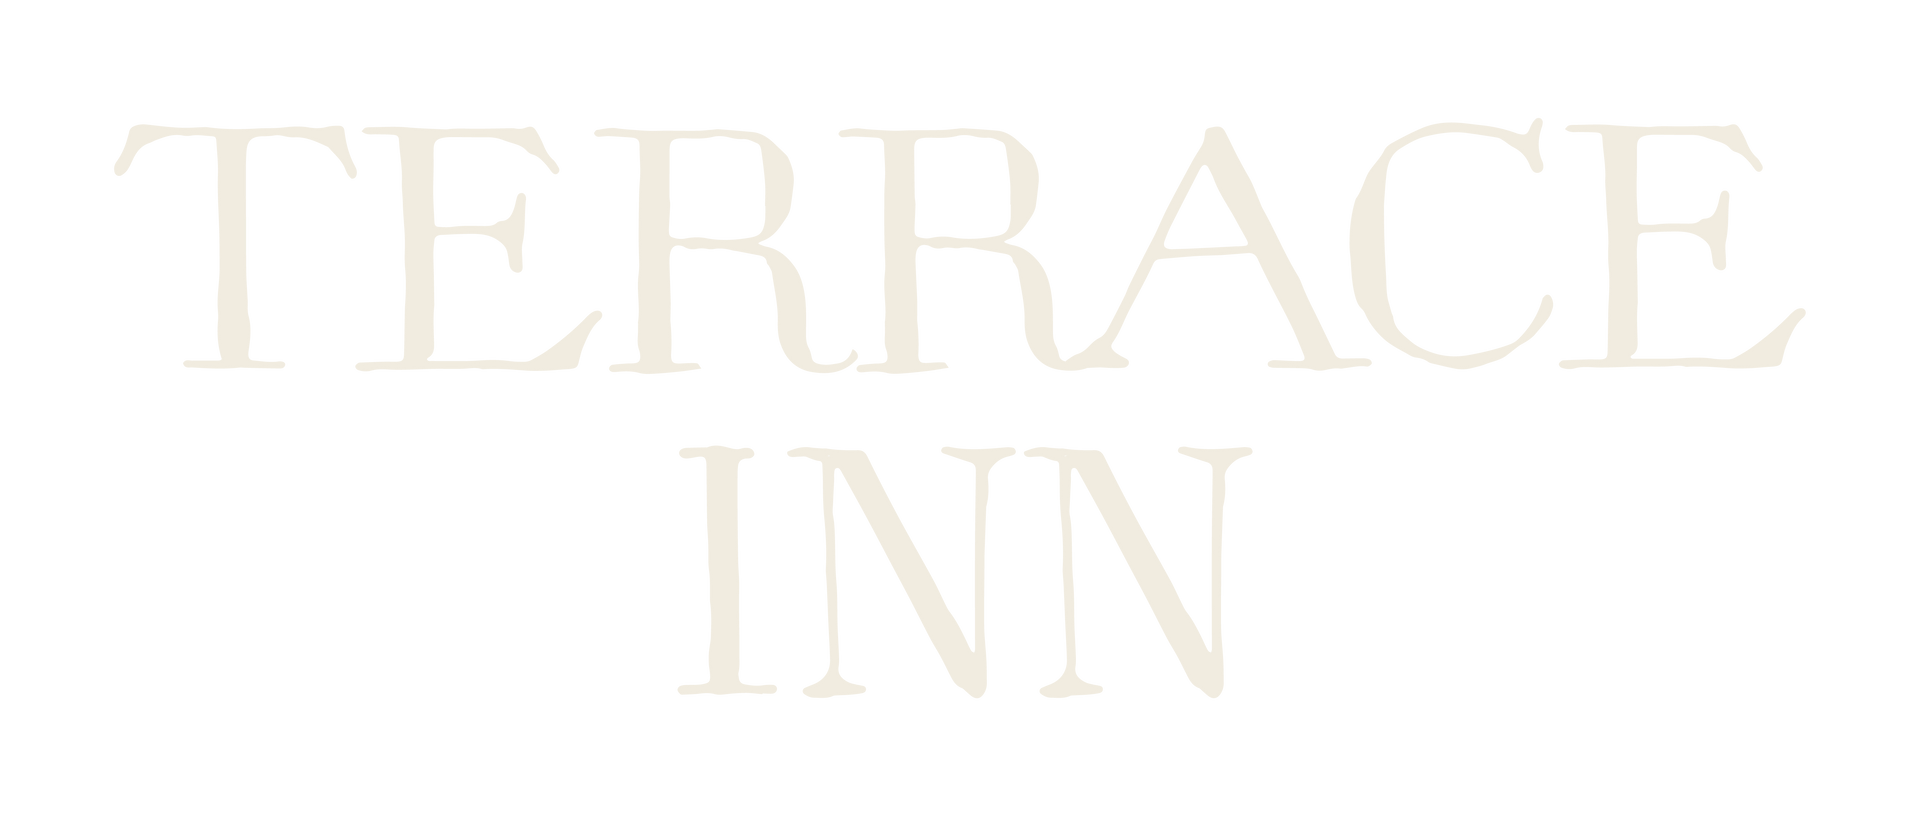 terrace inn in cream lettering